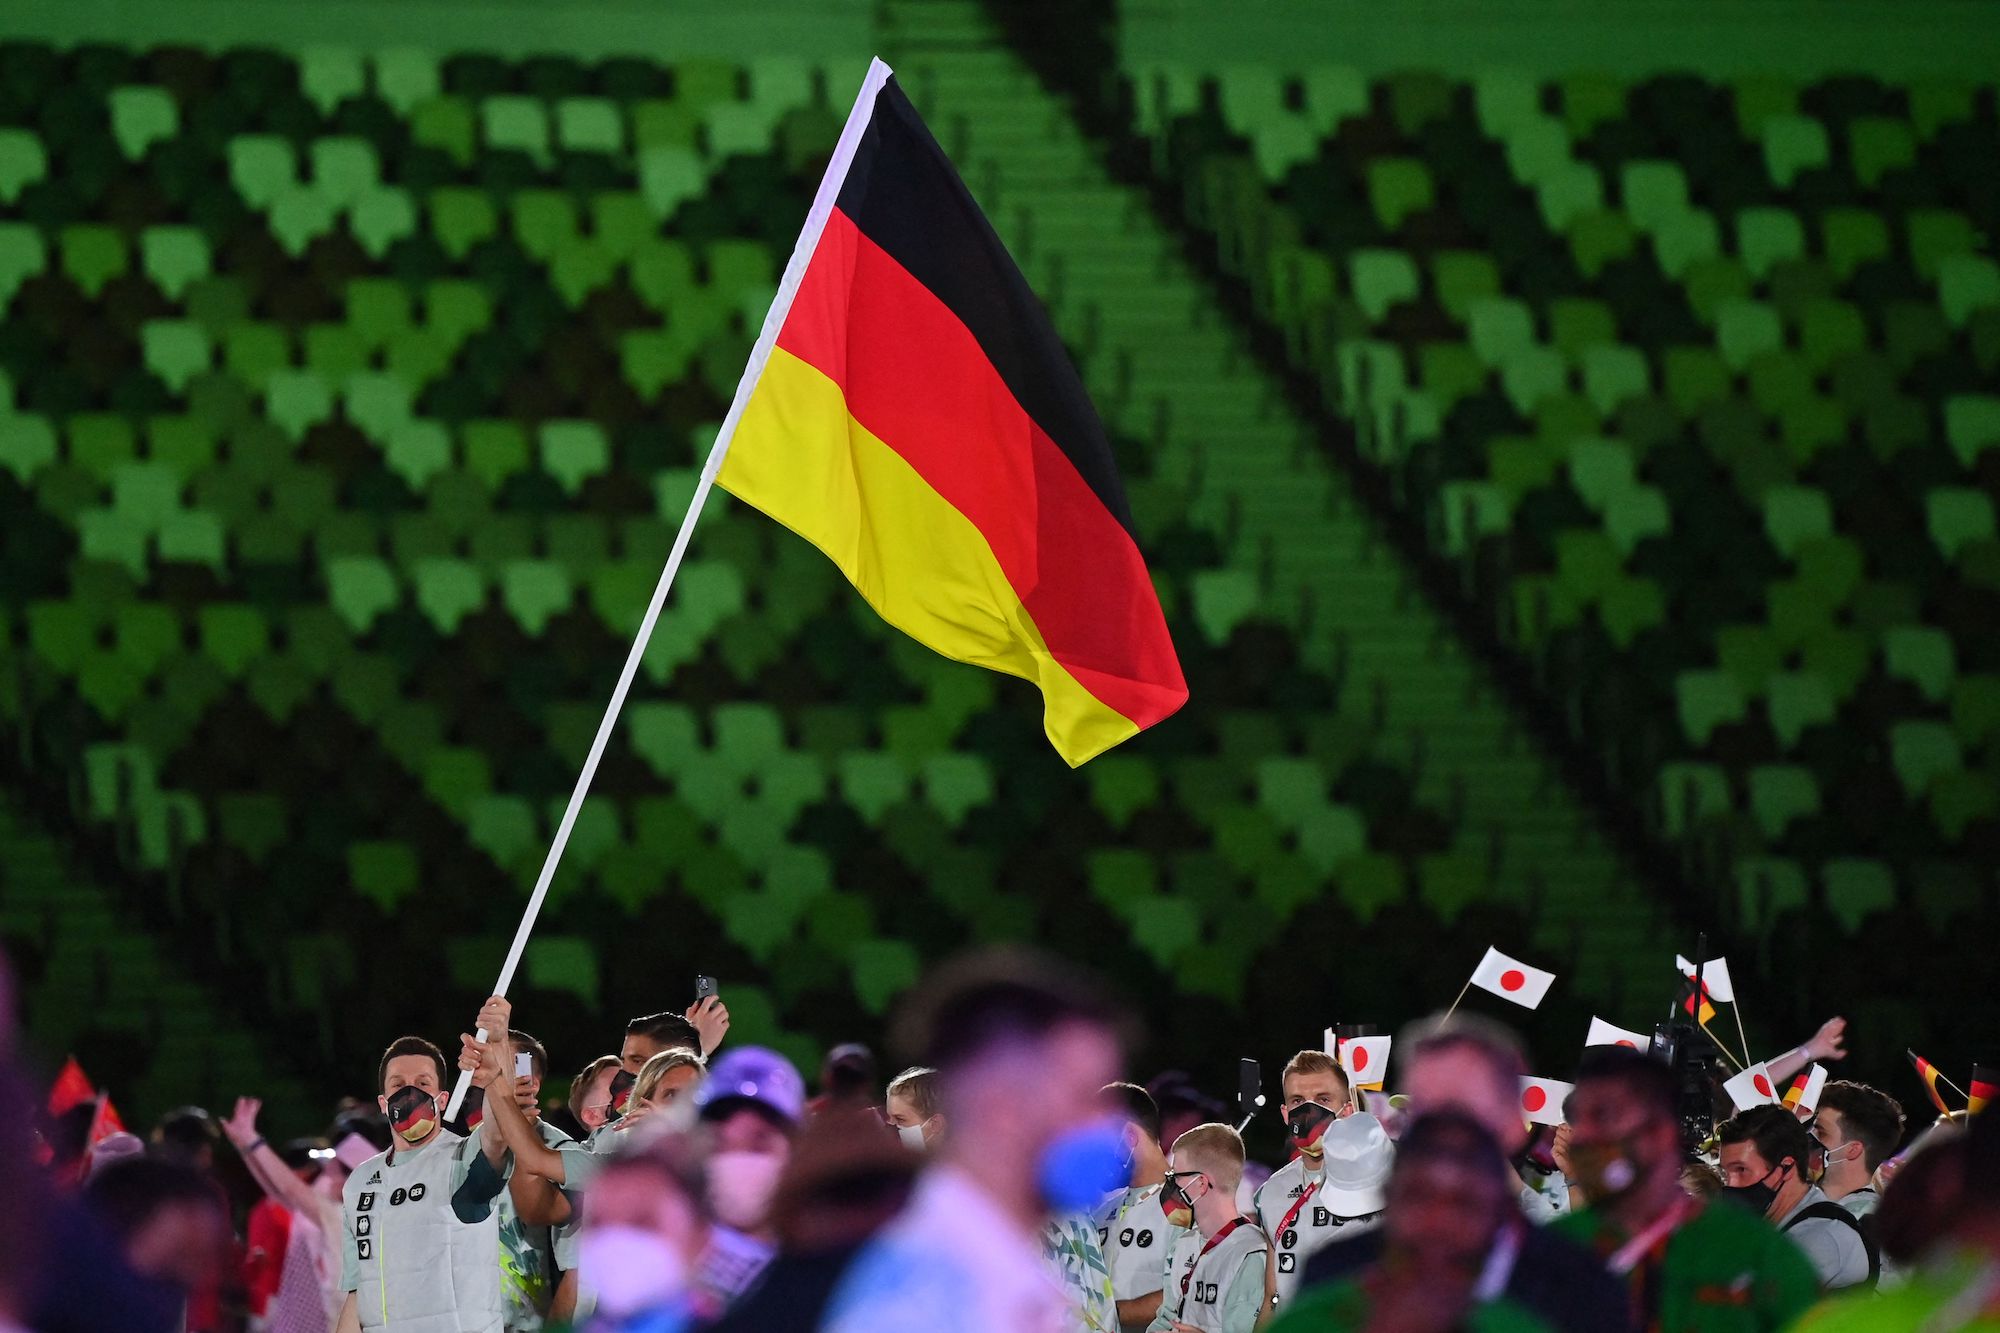 El entrenador alemán se disculpa por los comentarios racistas hechos durante la contrarreloj en los Juegos Olímpicos de Tokio